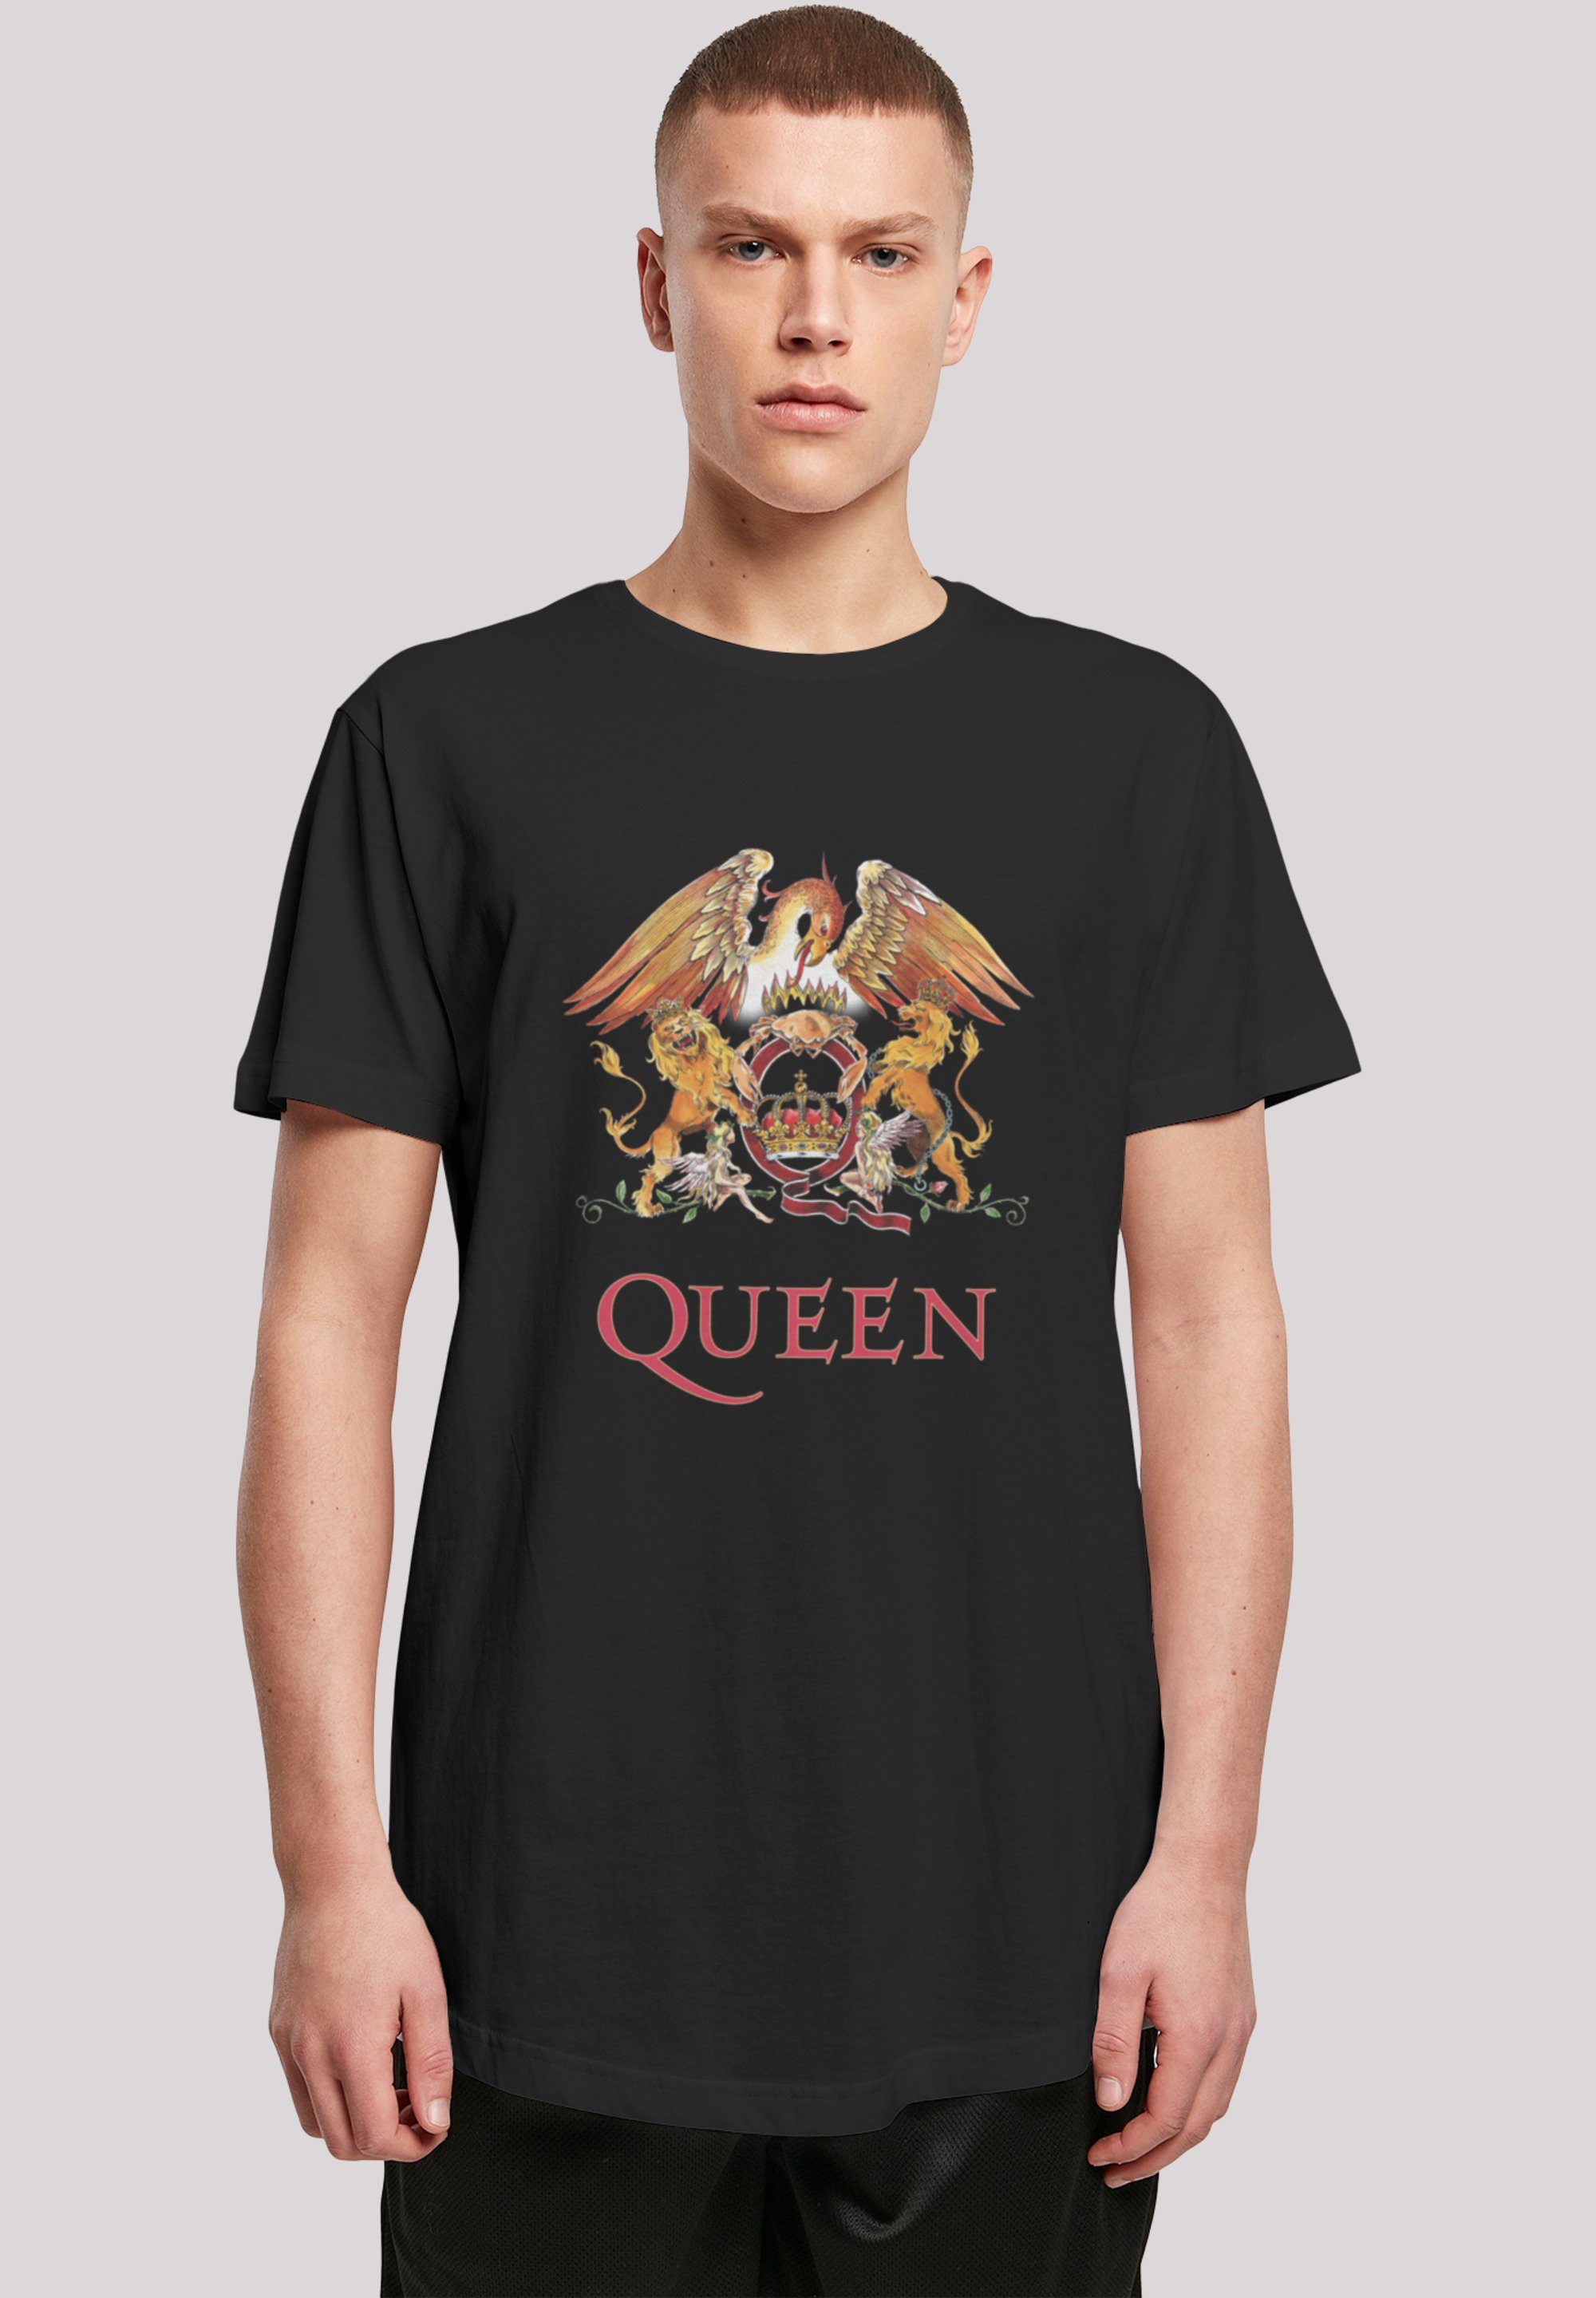 Rockband Print, T-Shirt F4NT4STIC Model groß 180 Black Queen ist Größe Classic Crest trägt cm und M Das